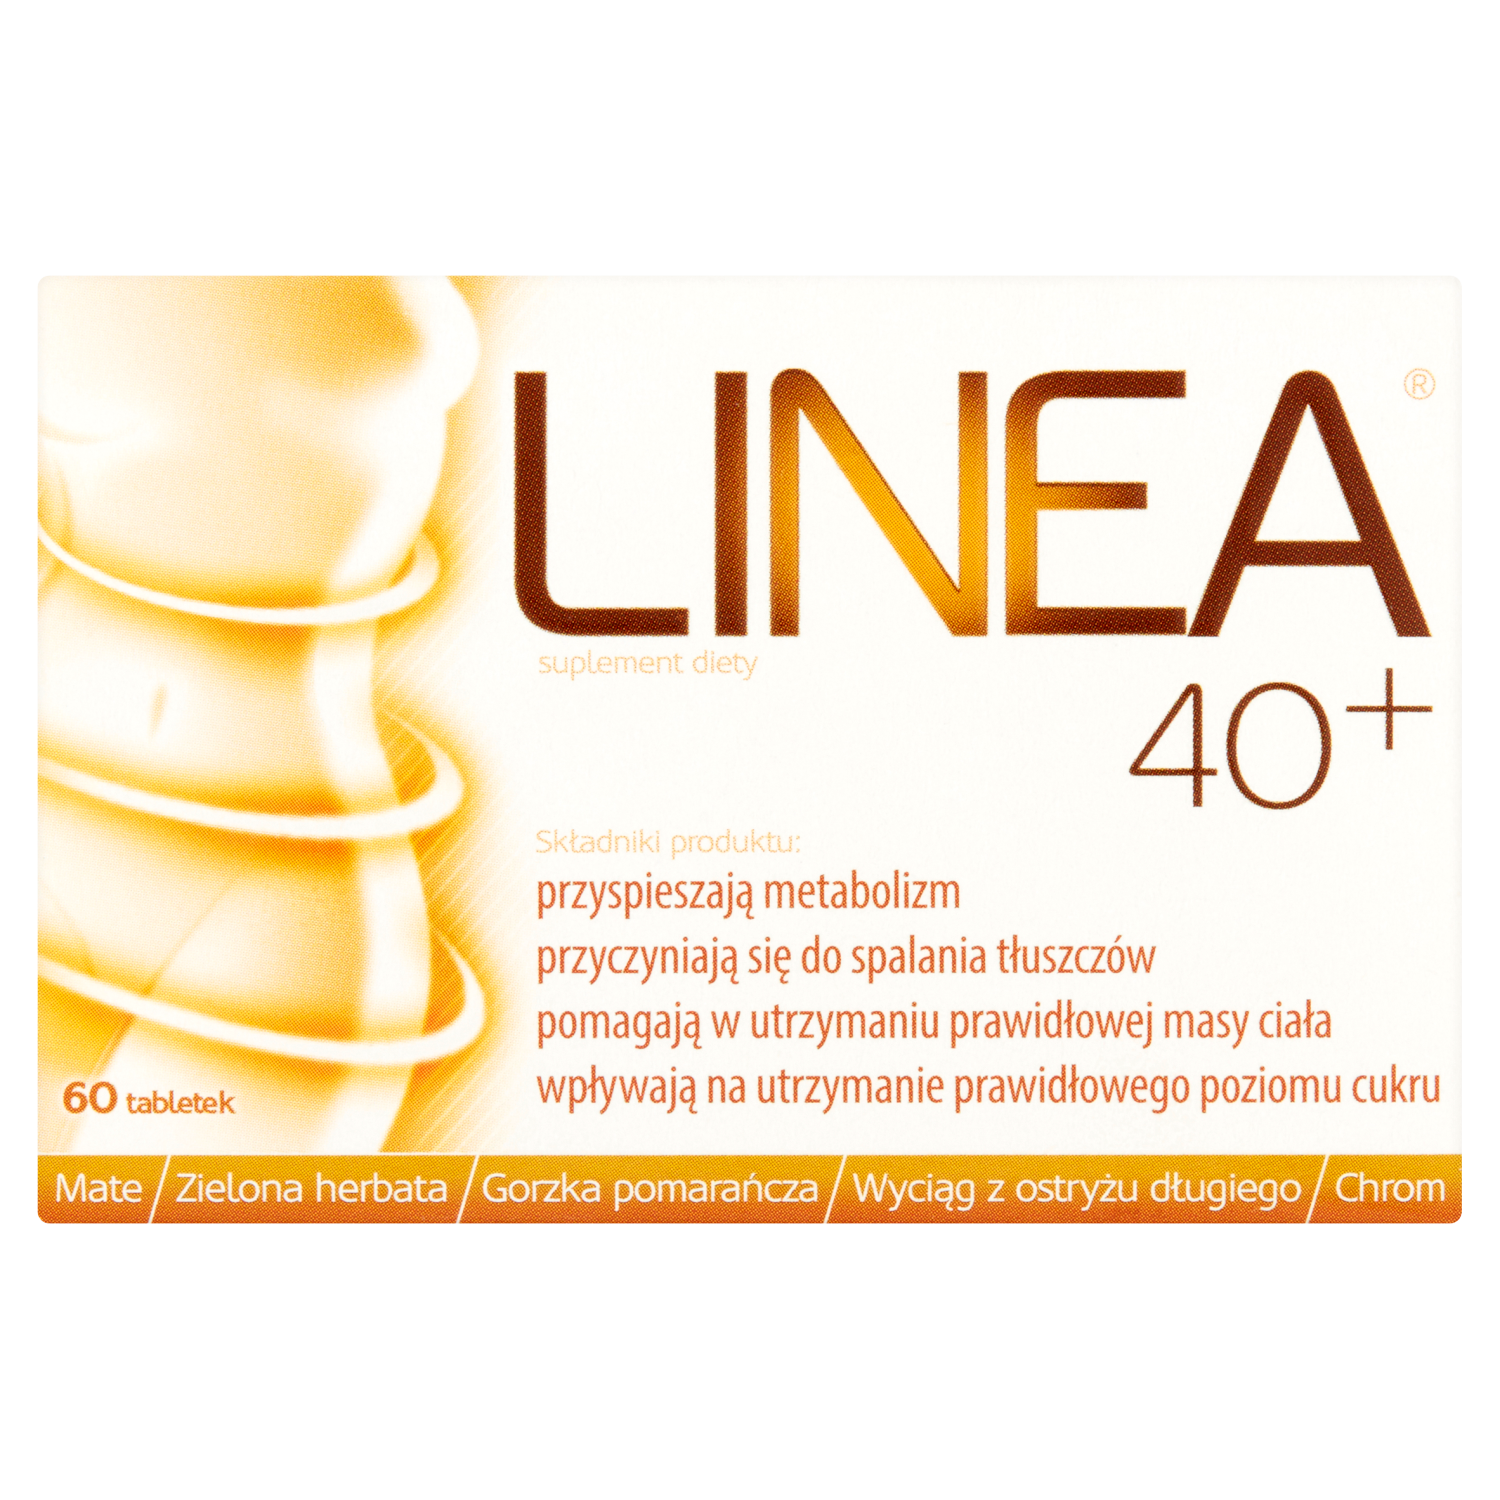 linea detox биологически активная добавка 60 таблеток 1 упаковка Linea 40+ биологически активная добавка, 60 таблеток/1 упаковка